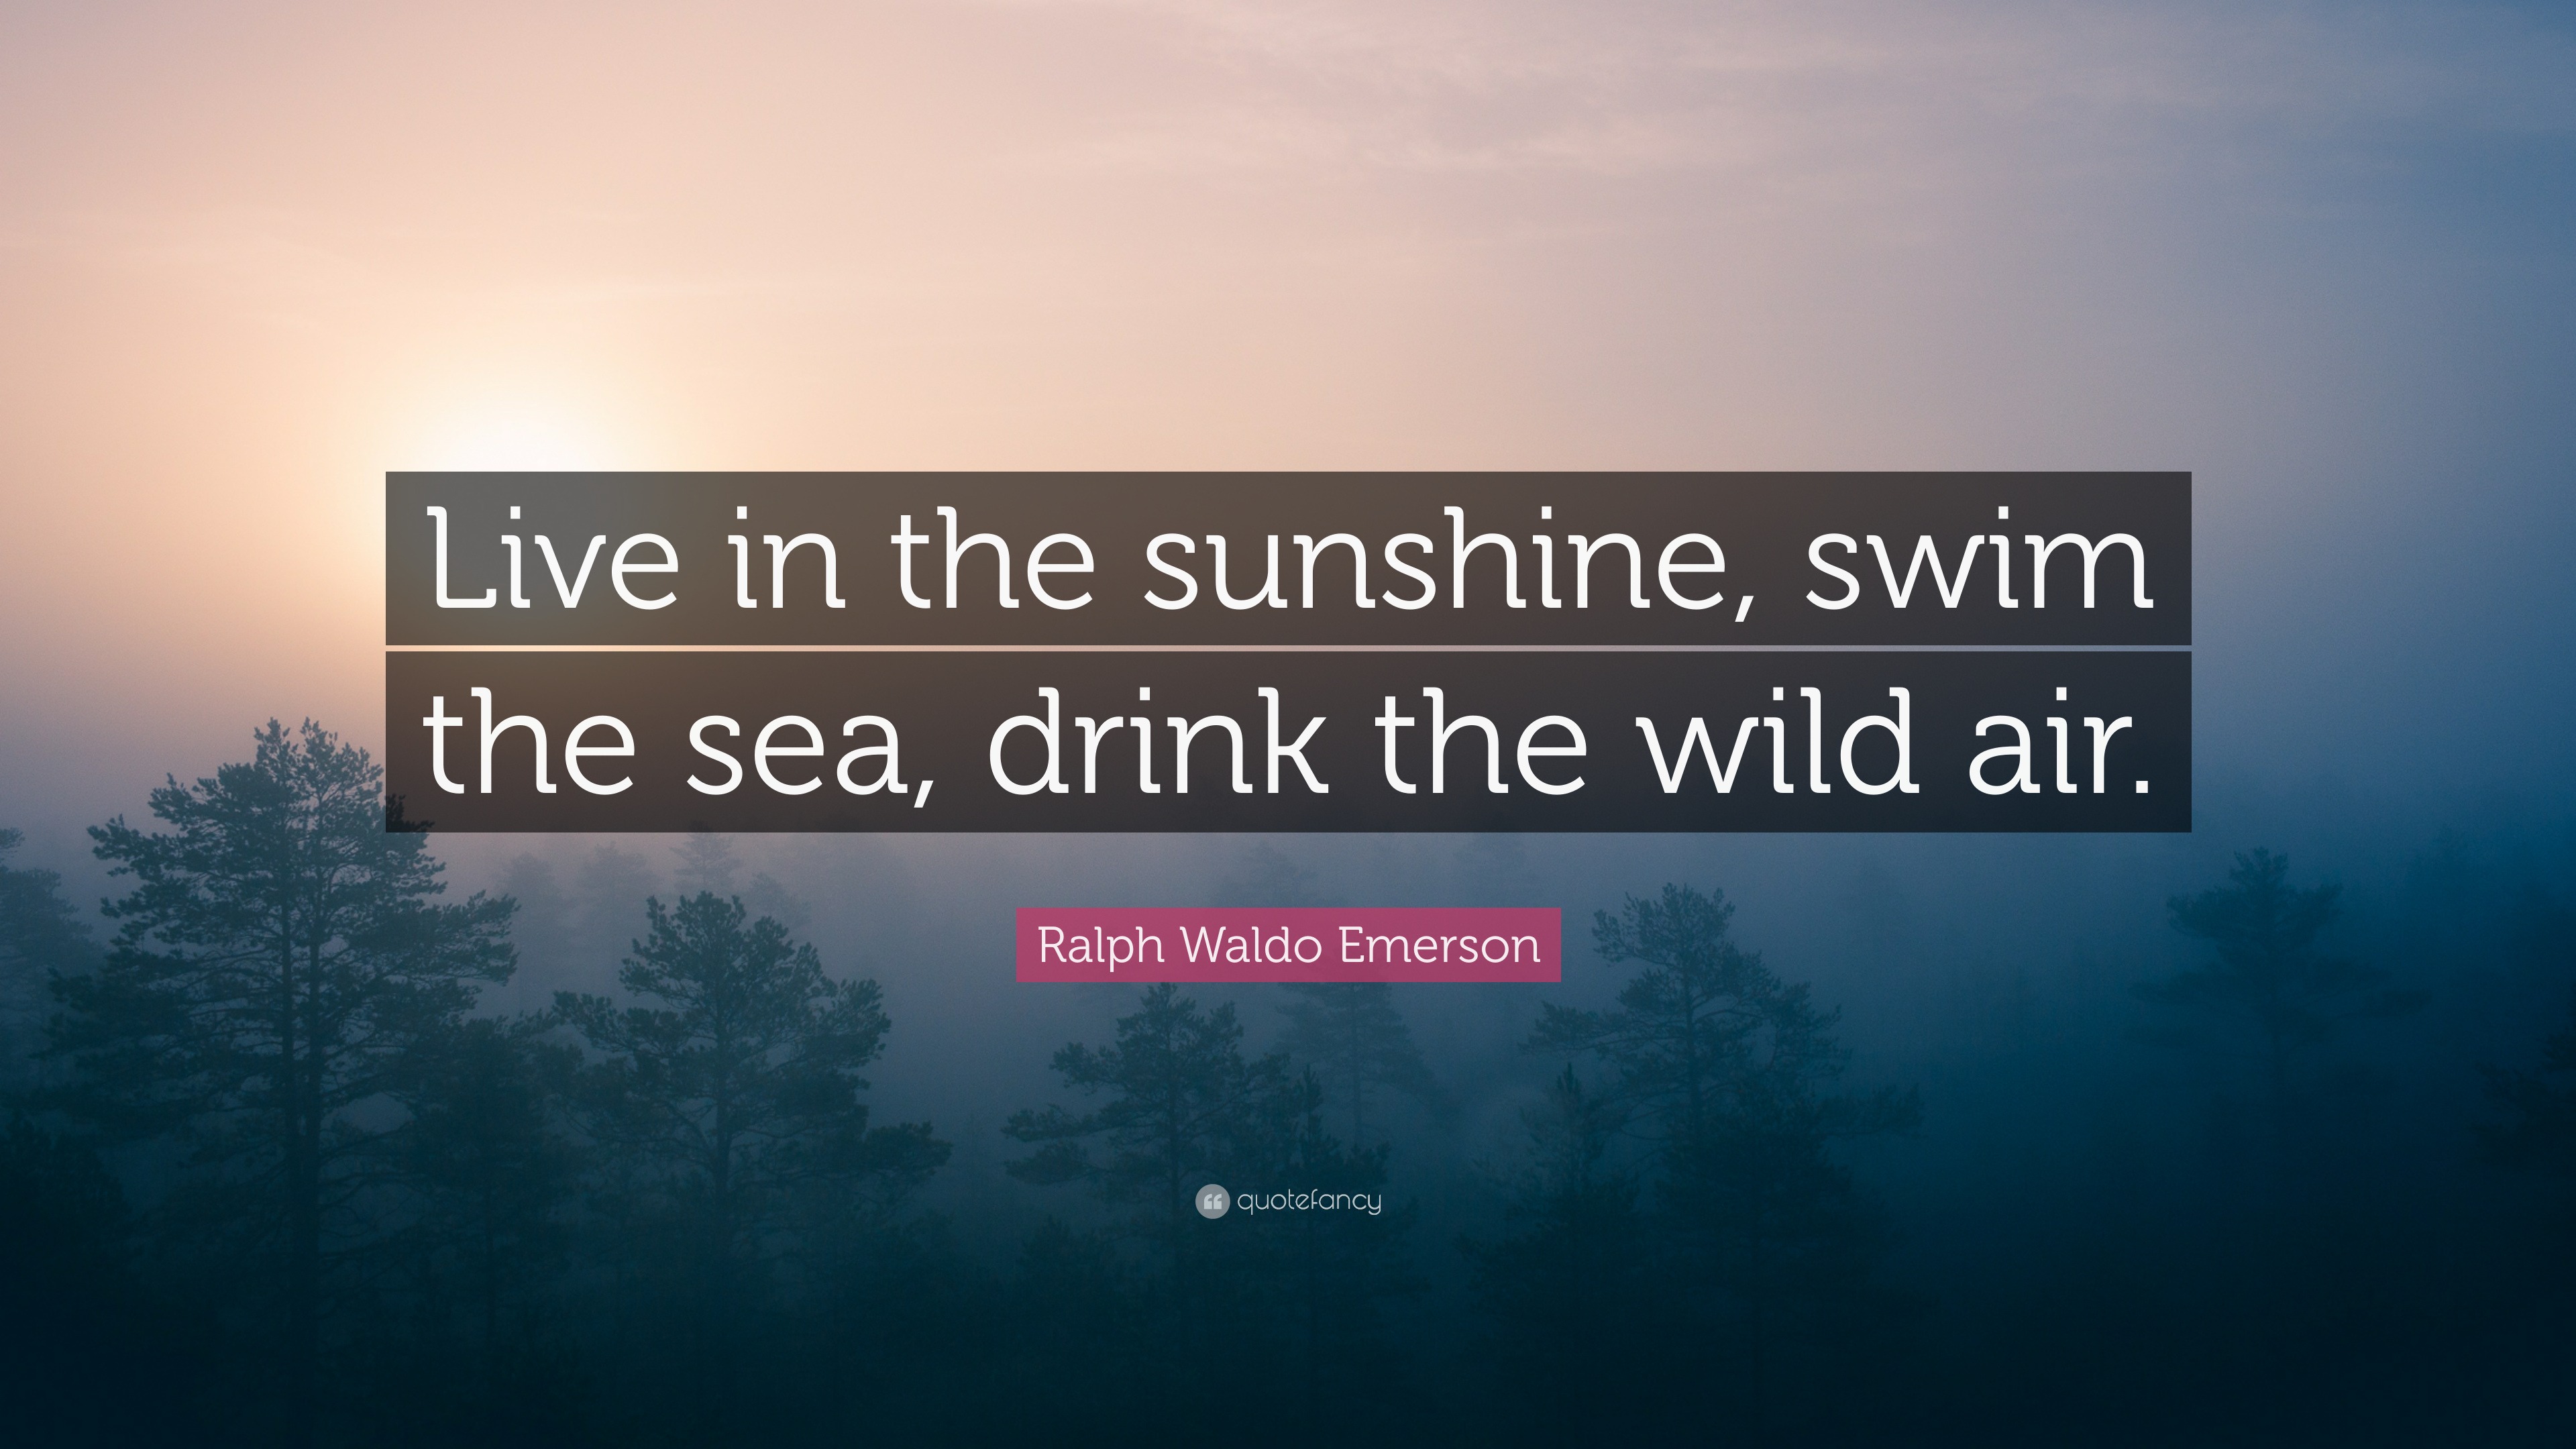 Ralph Waldo Emerson Quote: “Live in the sunshine, swim the sea, drink ...